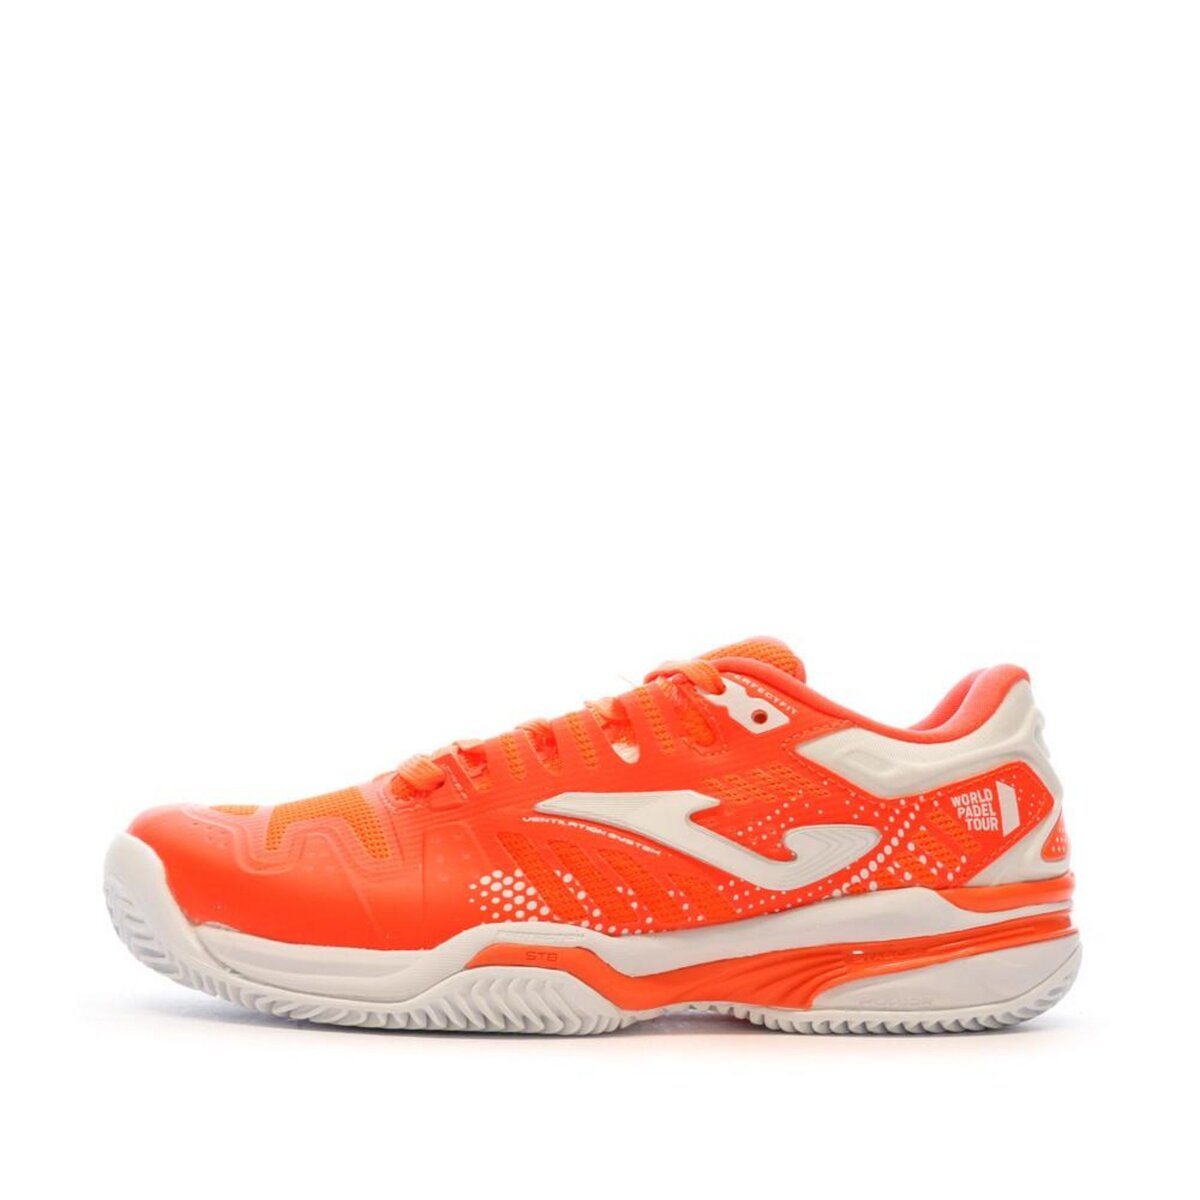  Chaussures de Padel Oranges Femme Joma Jr2207